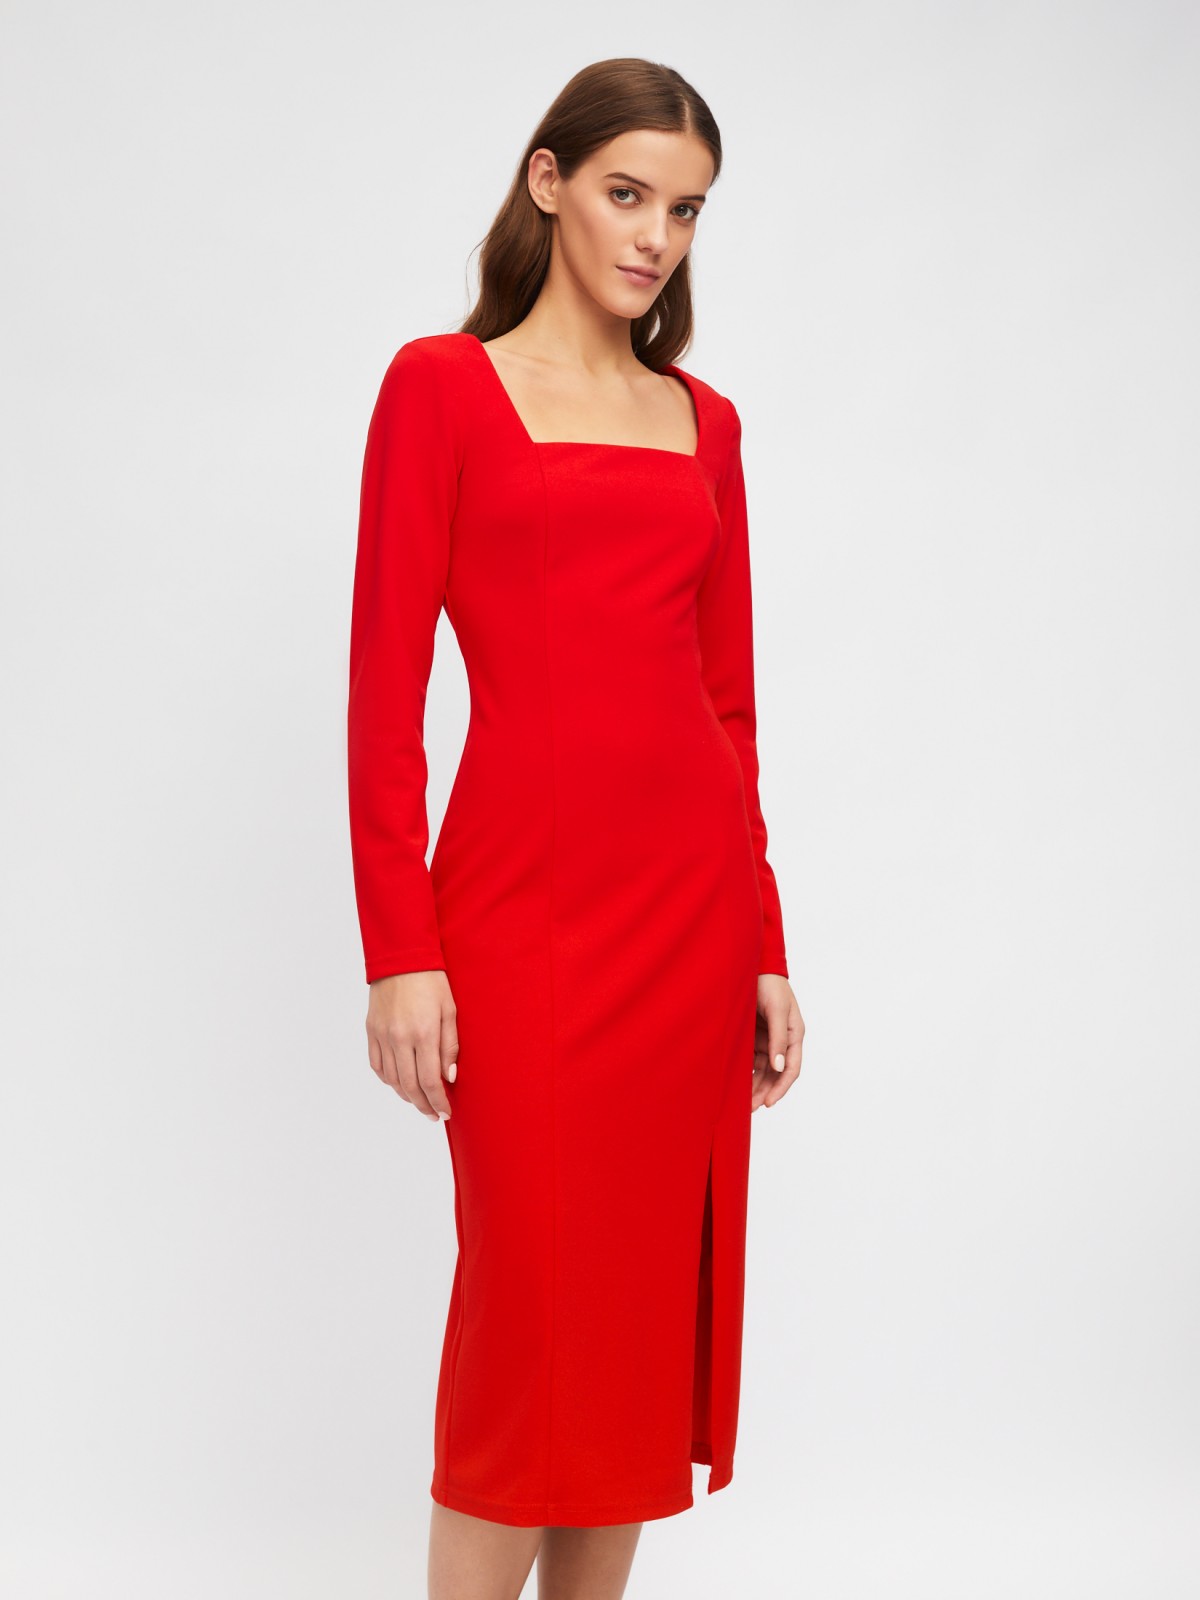 Платье-футляр с разрезом на подоле zolla 223458139161, цвет красный, размер XS